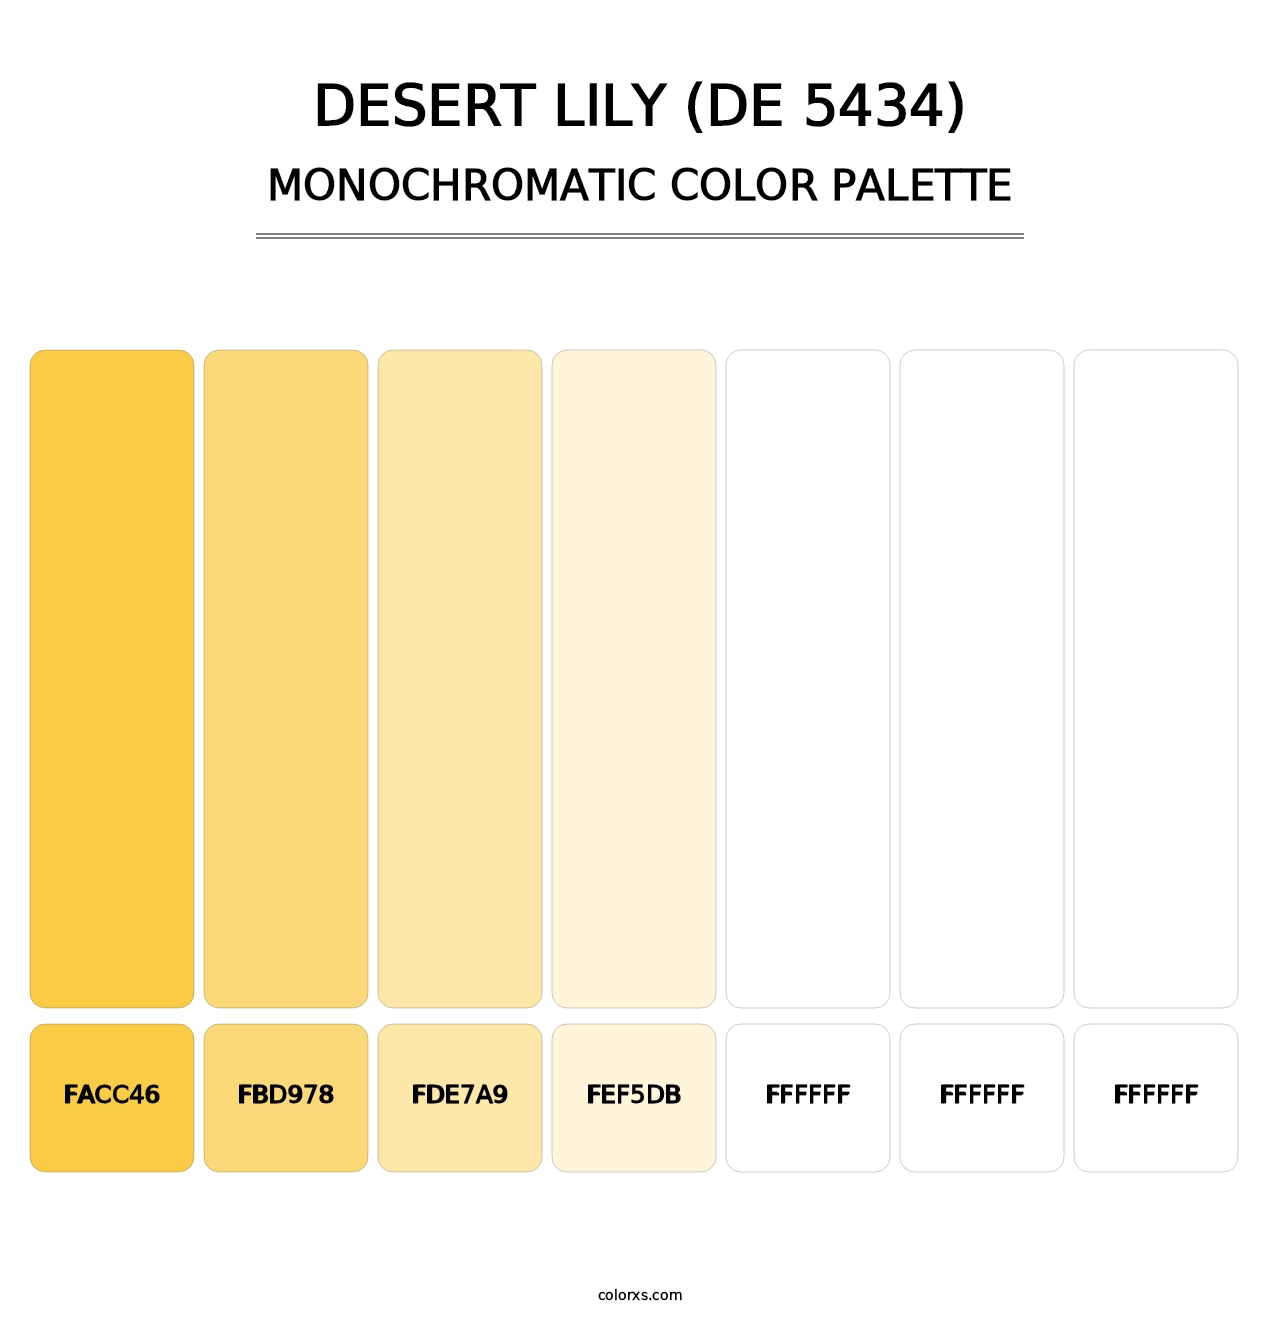 Desert Lily (DE 5434) - Monochromatic Color Palette